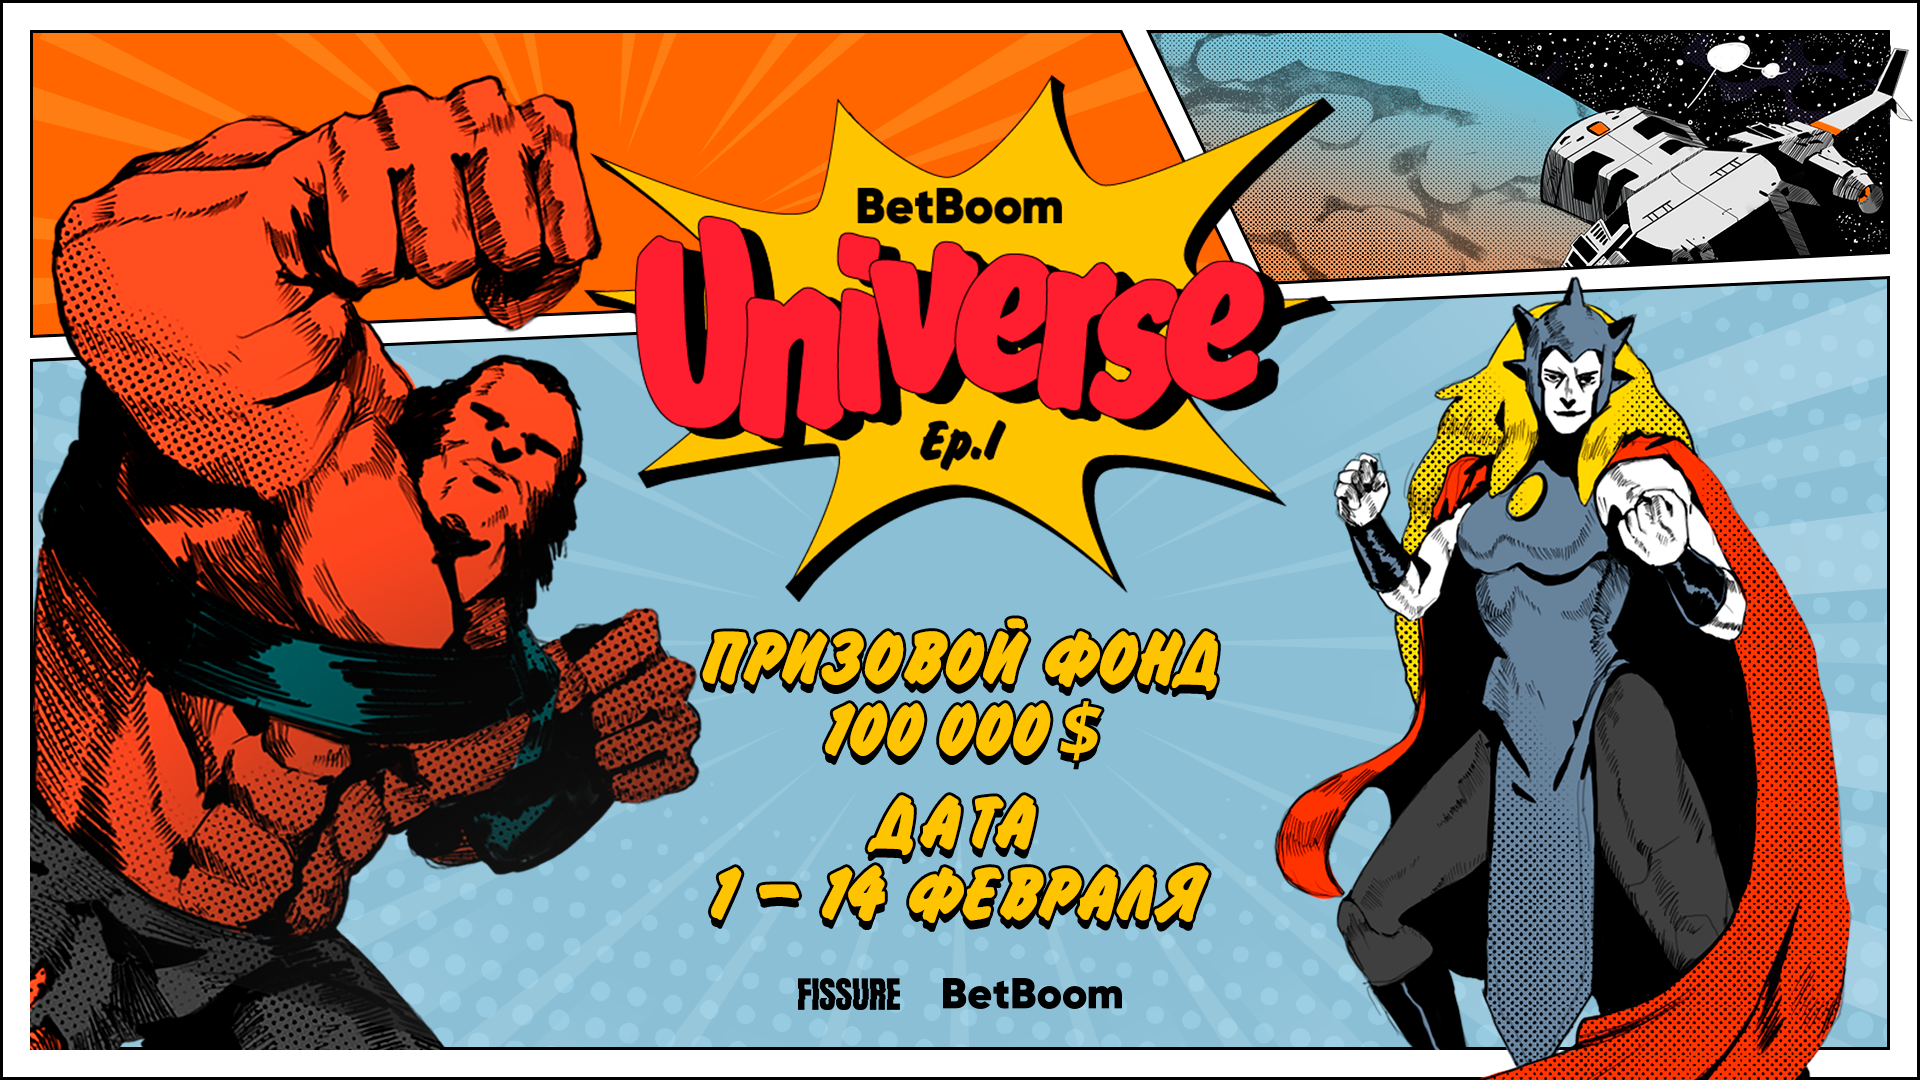 BetBoom Universe. Ep. 1: Comics Zone